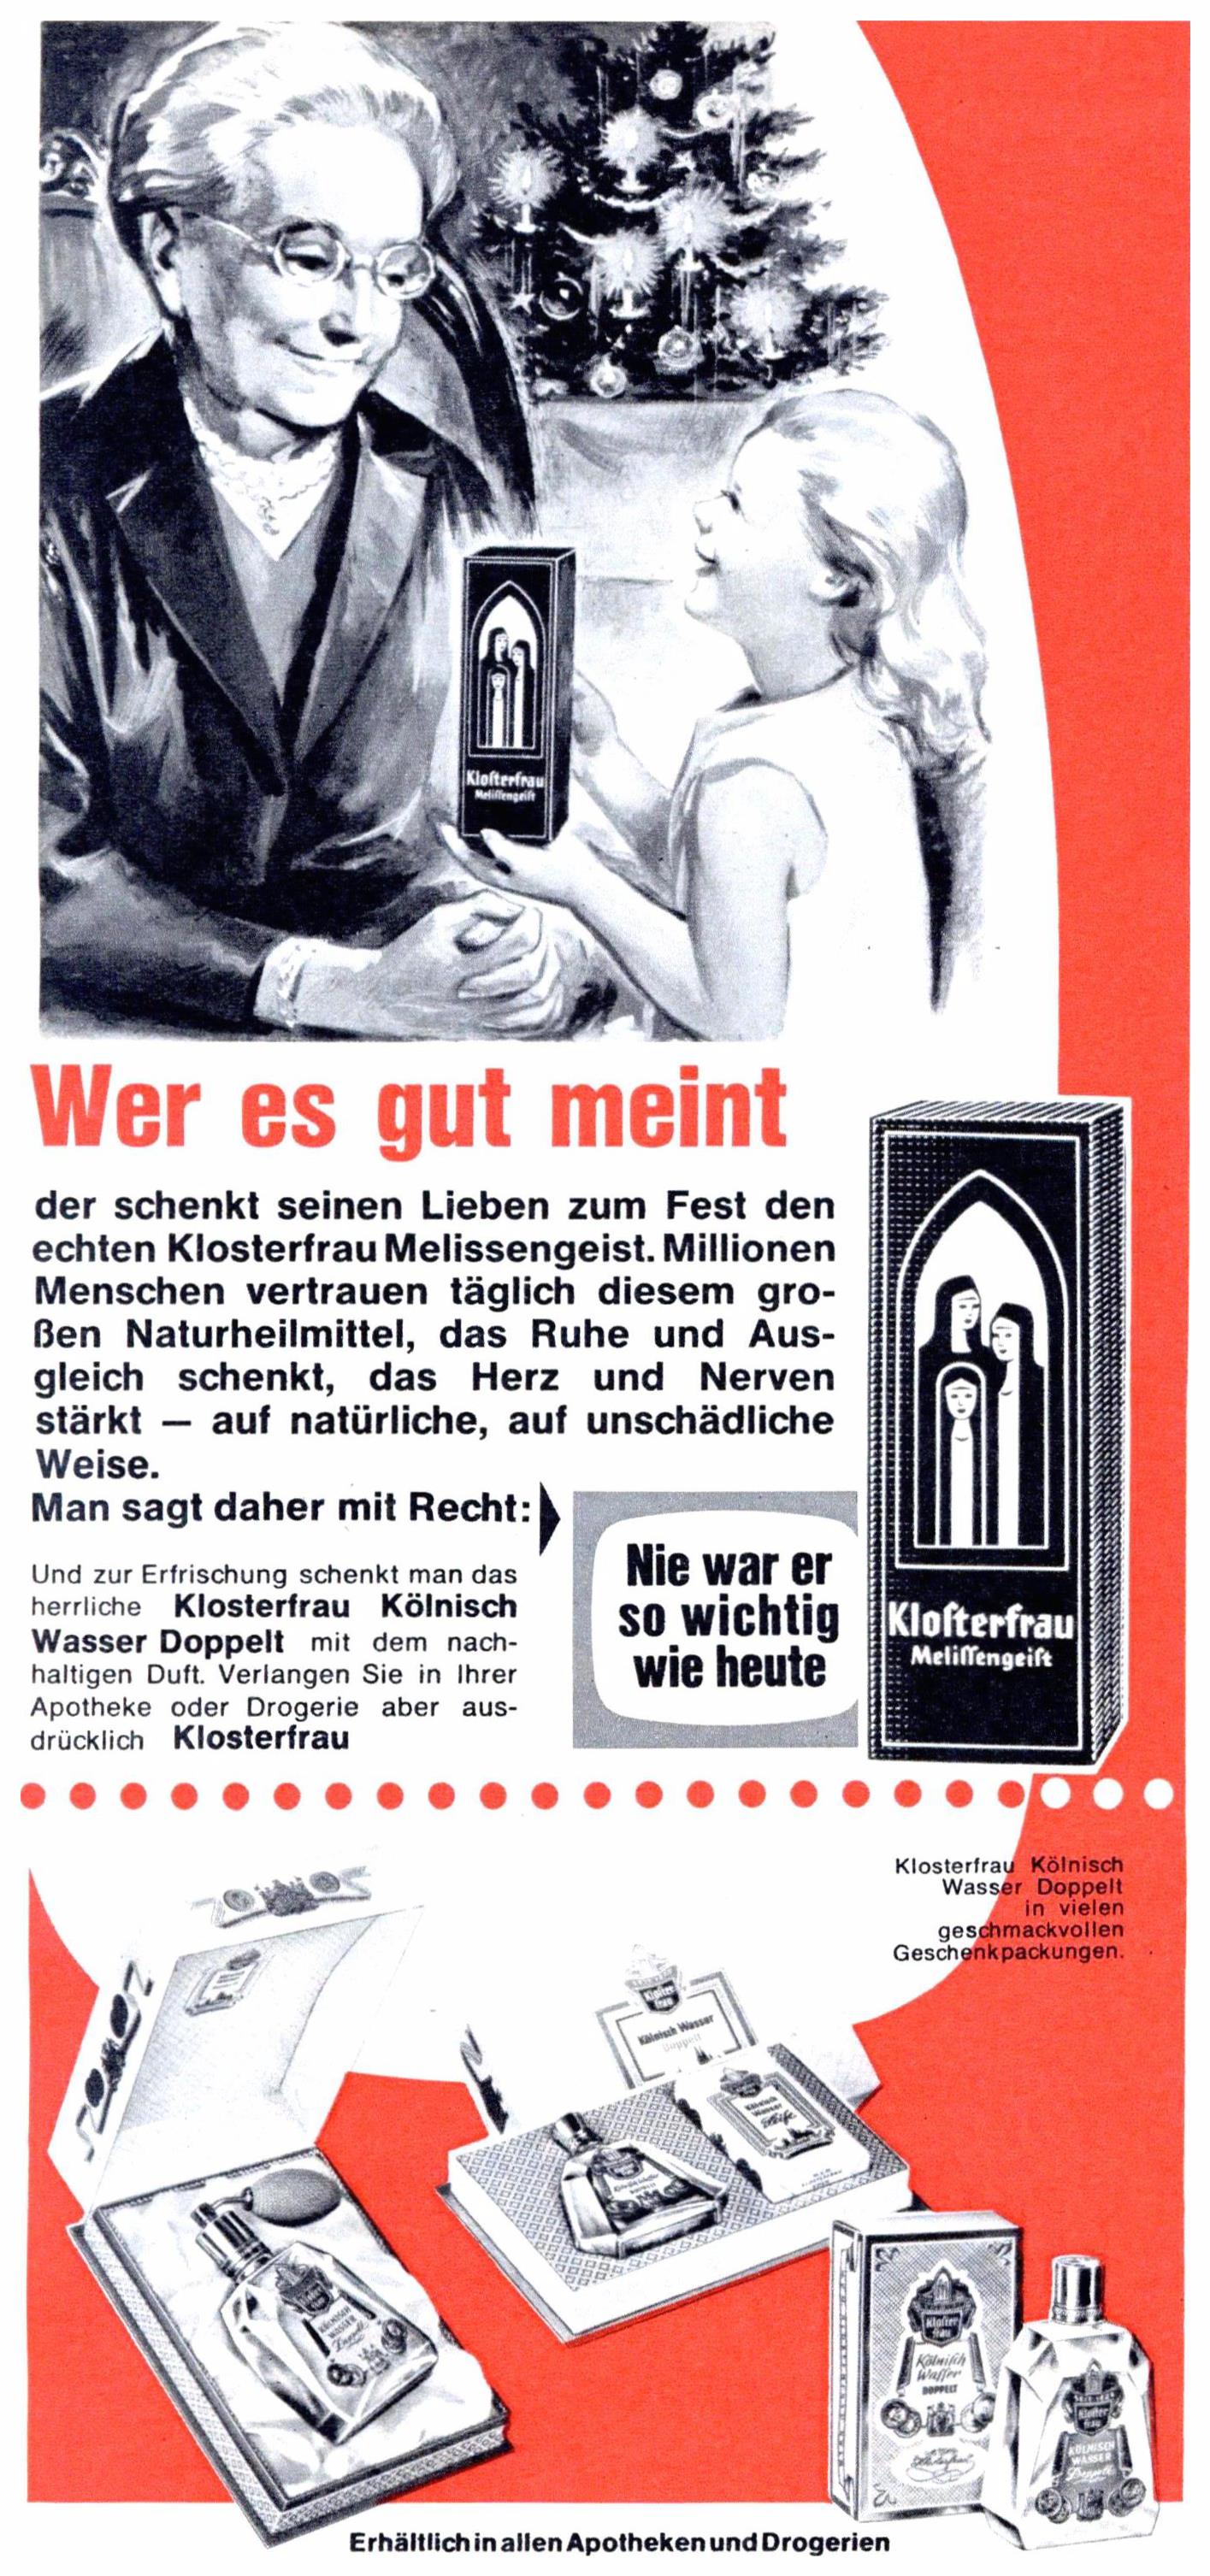 Klosterfrau 1963 0.jpg